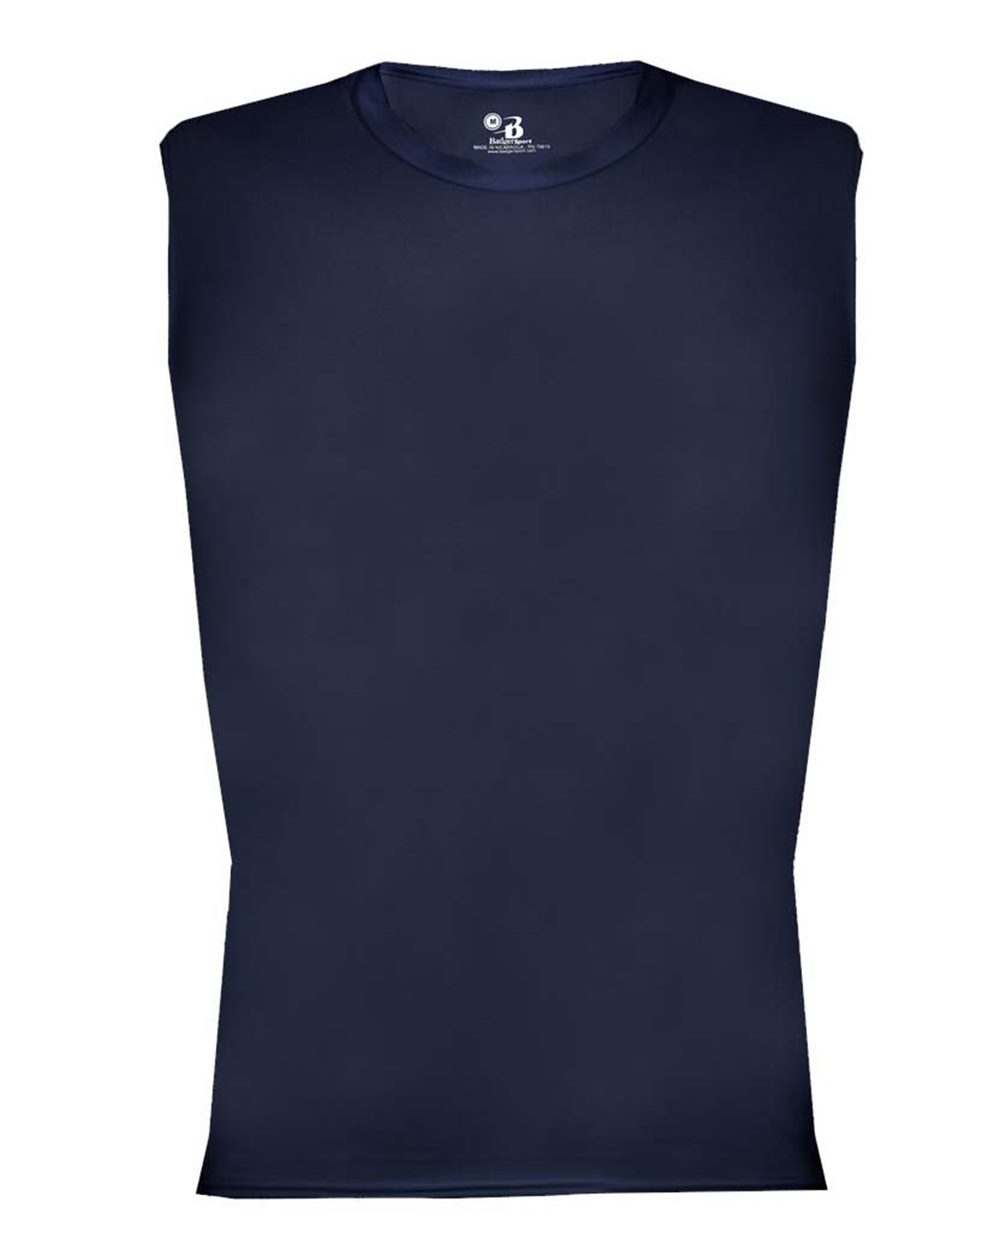 Unisex Compression Sleeveless Shirt